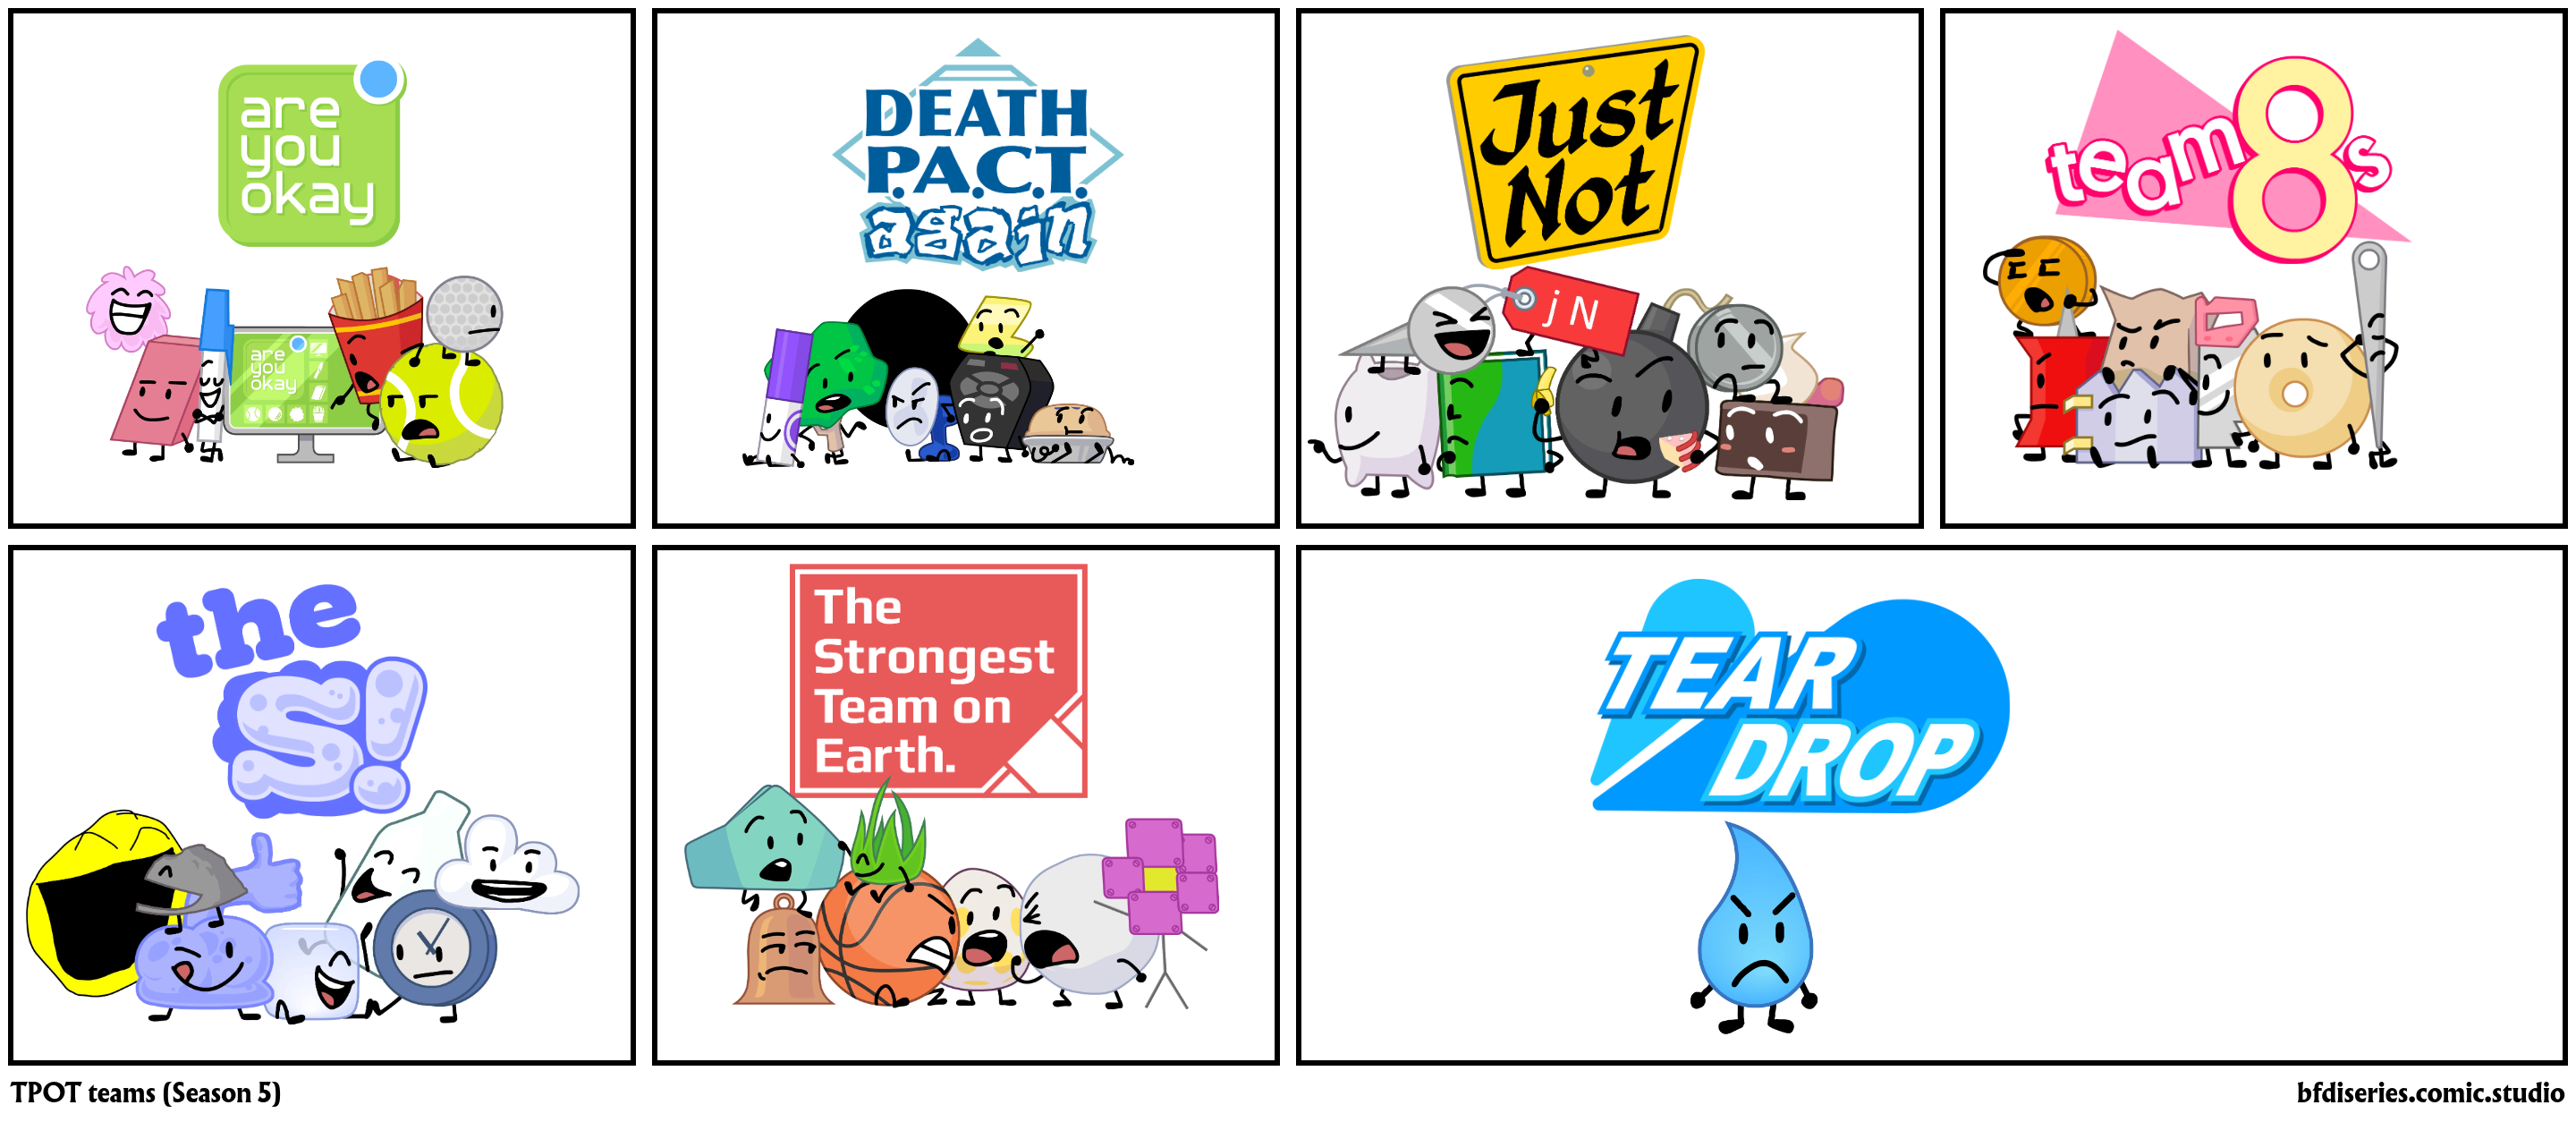 TPOT teams (Season 5)